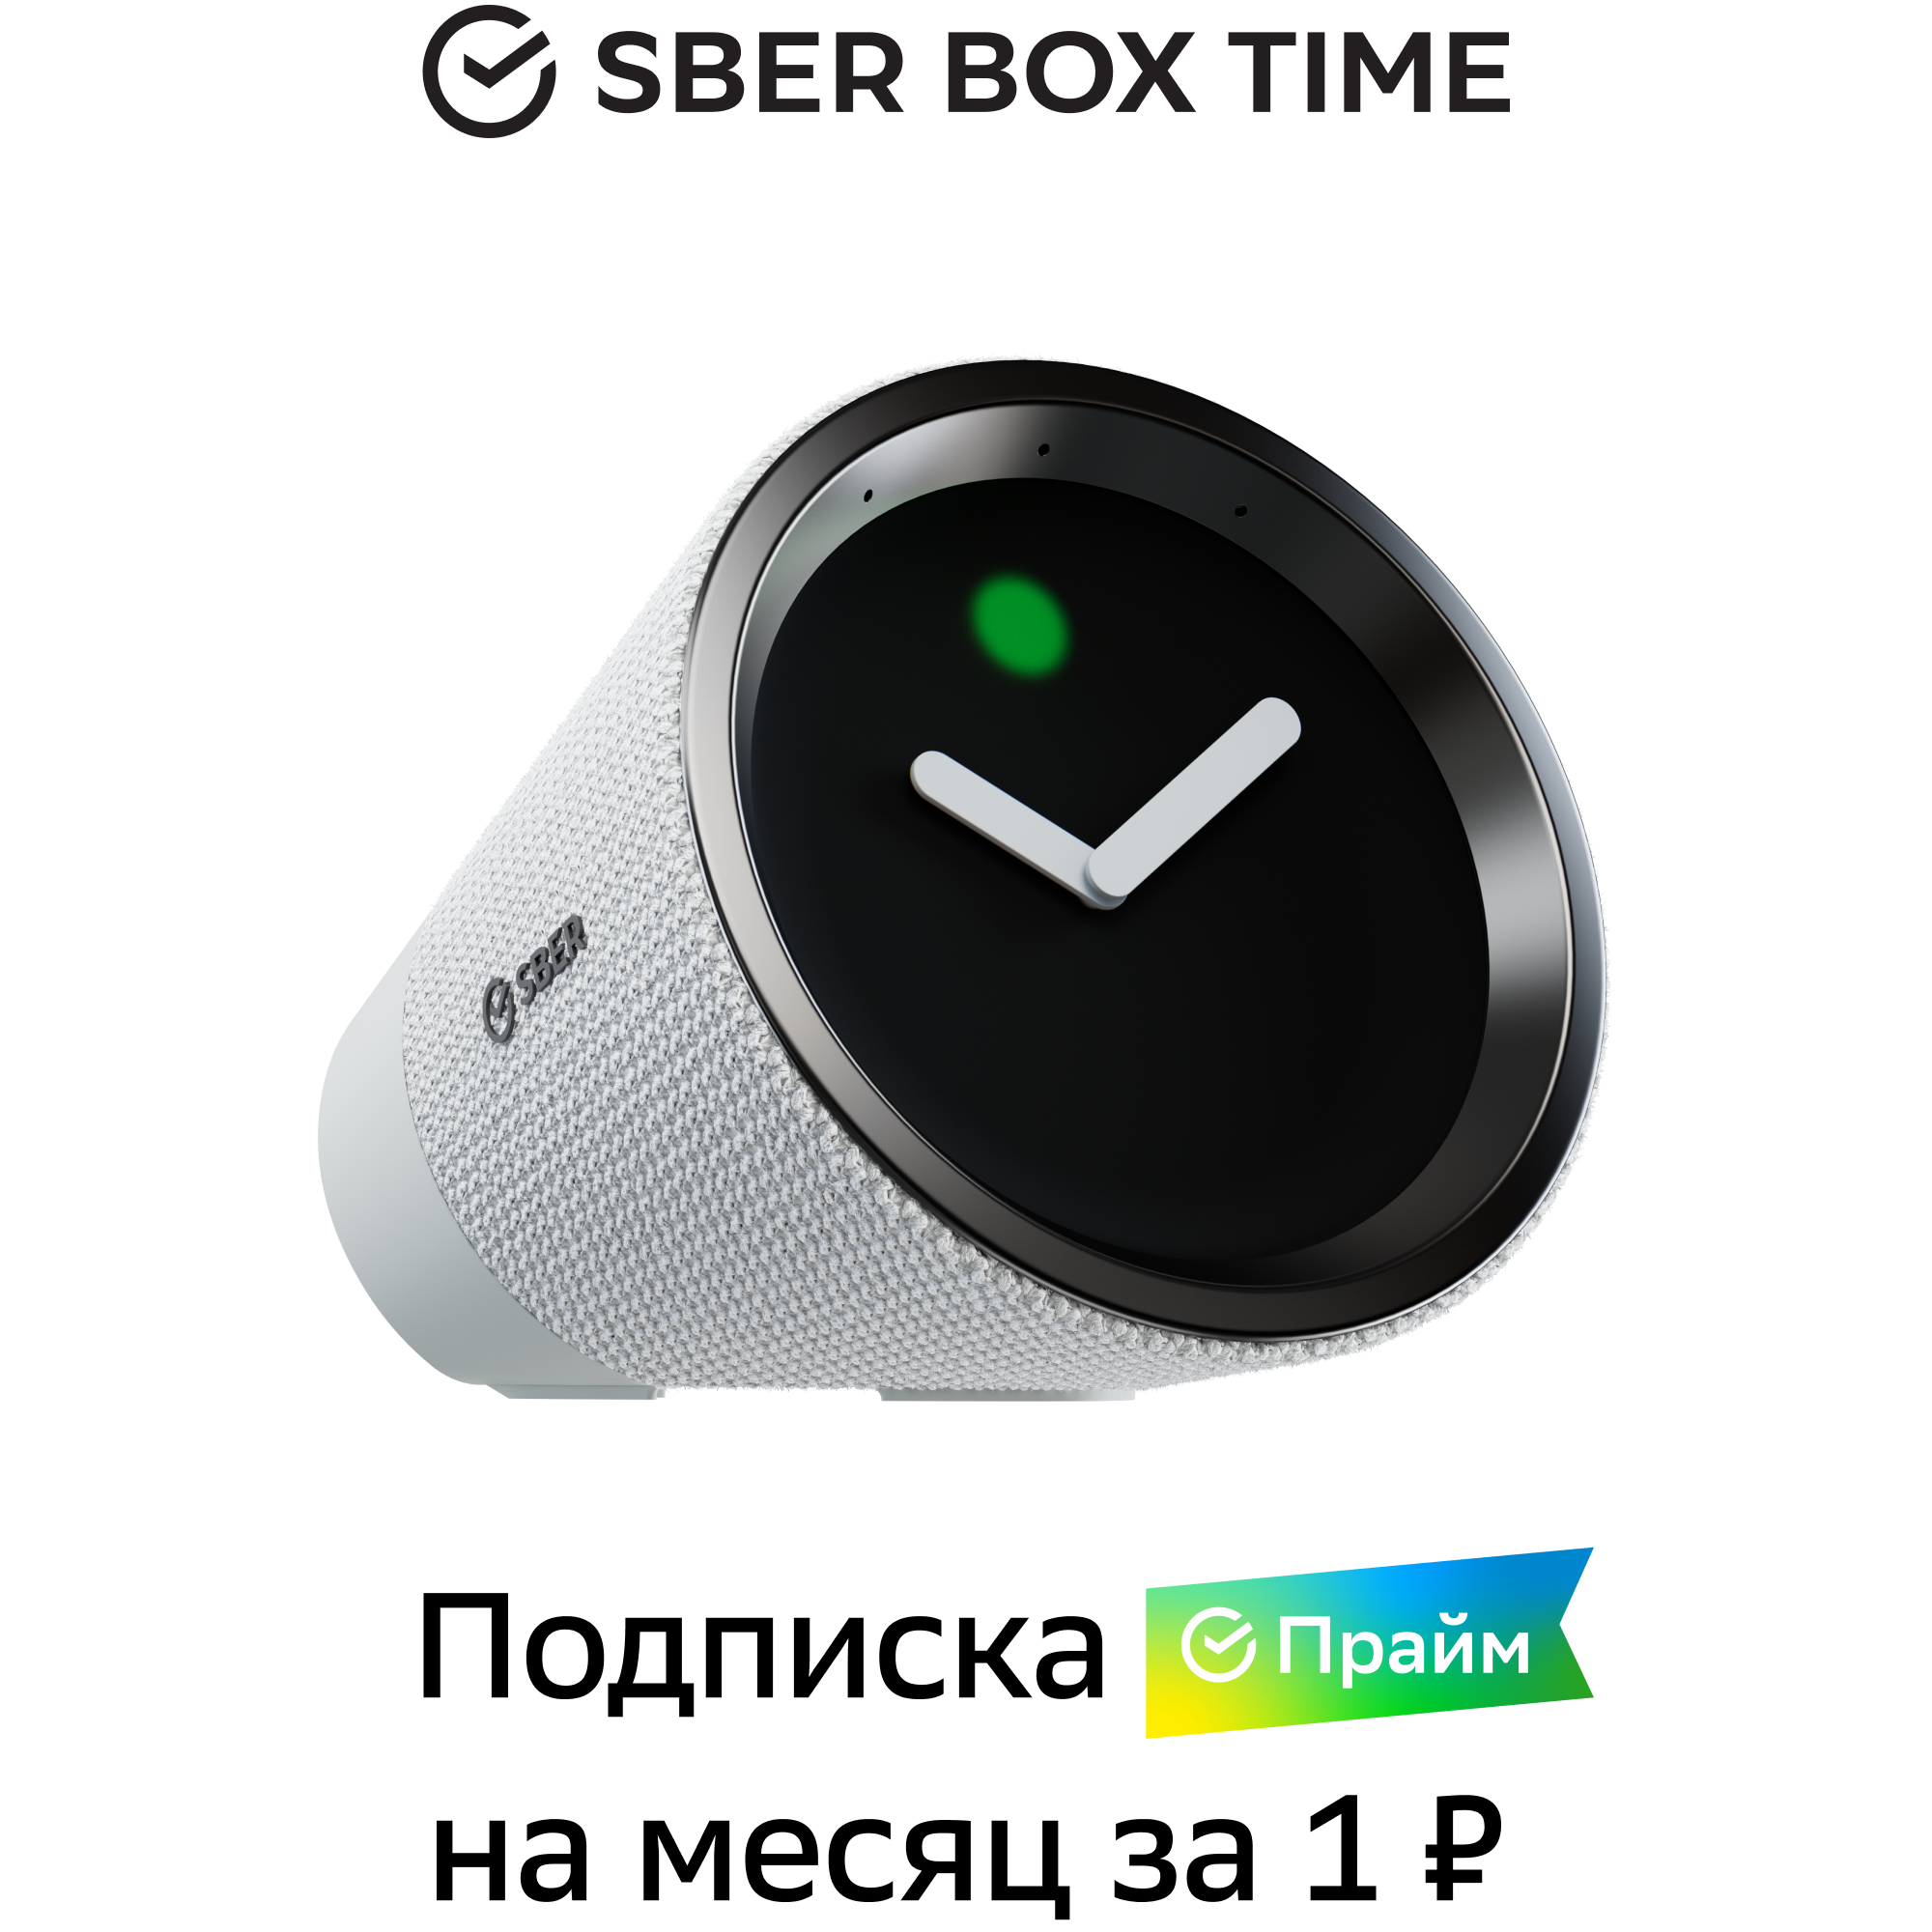 Сбердевайсы Умная колонка сбердевайсы Sber SberBox Time с голосовым помощником белый SBDV-00026W